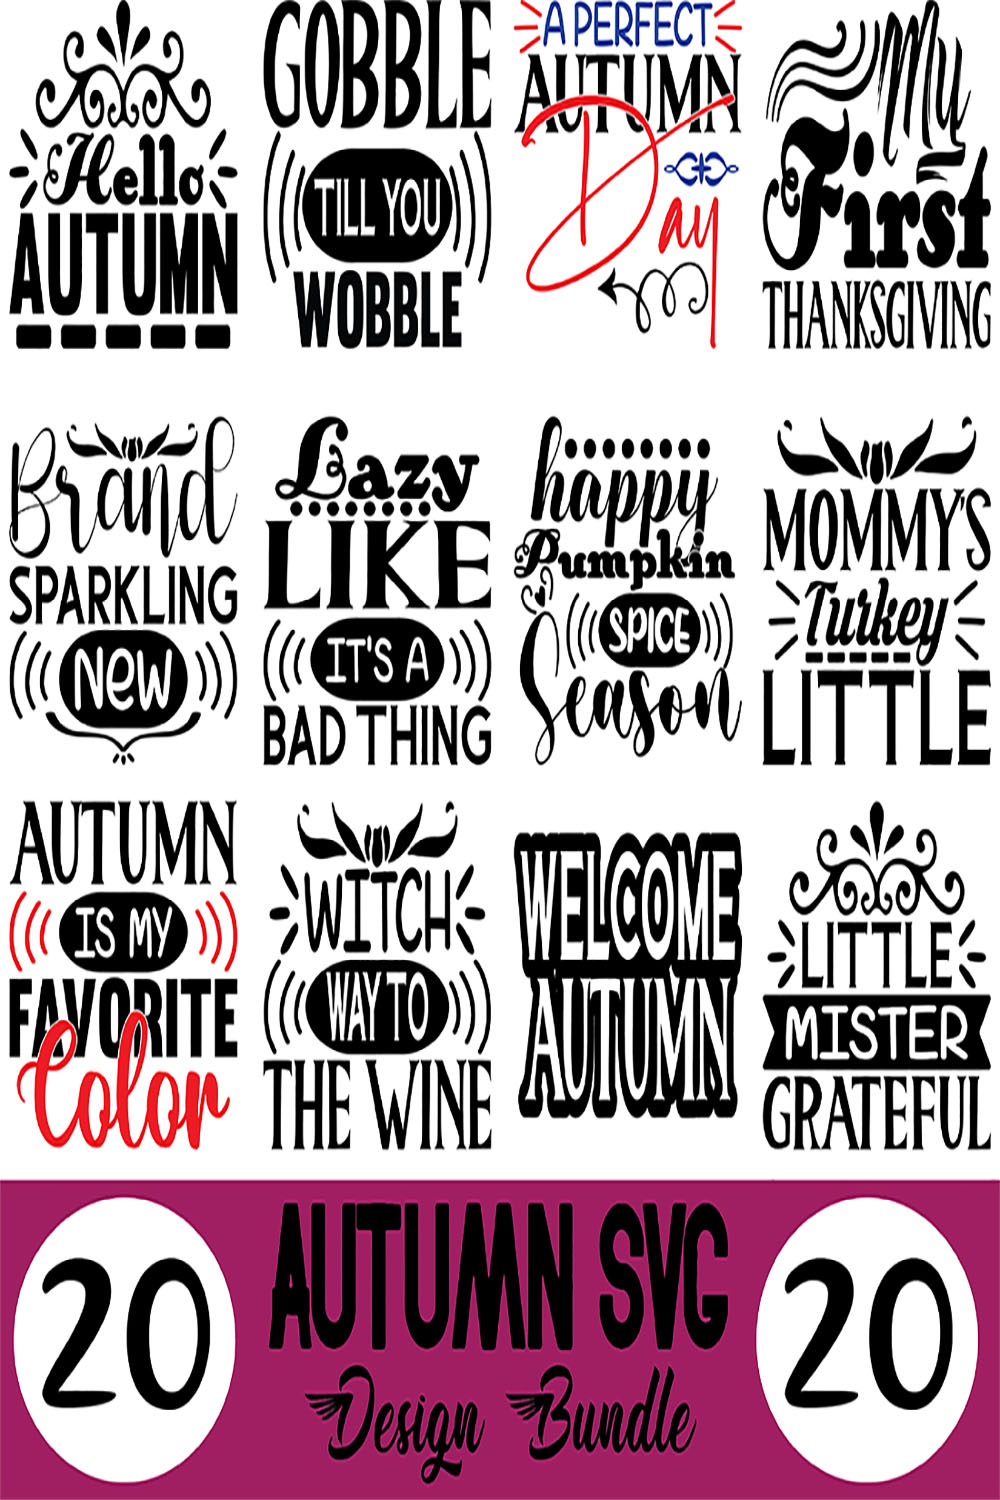 Autumn SVG Designs Bundle pinterest preview image.